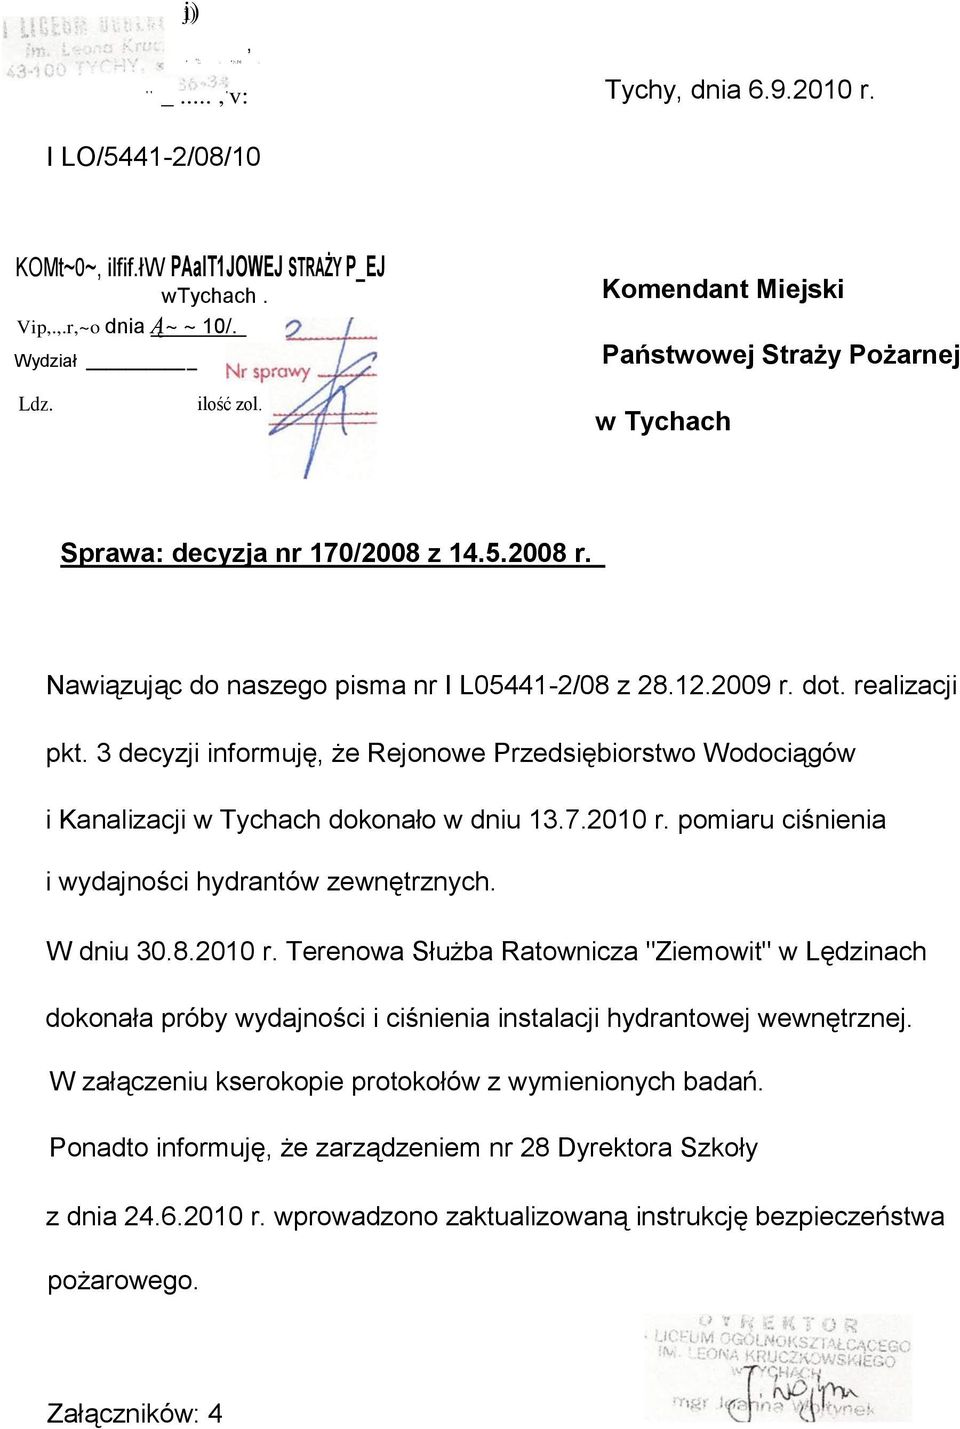 realizacji pkt. 3 decyzji informuję, że Rejonowe Przedsiębiorstwo Wodociągów i Kanalizacji w Tychach dokonało w dniu 13.7.2010 r. pomiaru ciśnienia i wydajności hydrantów zewnętrznych. W dniu 30.8.